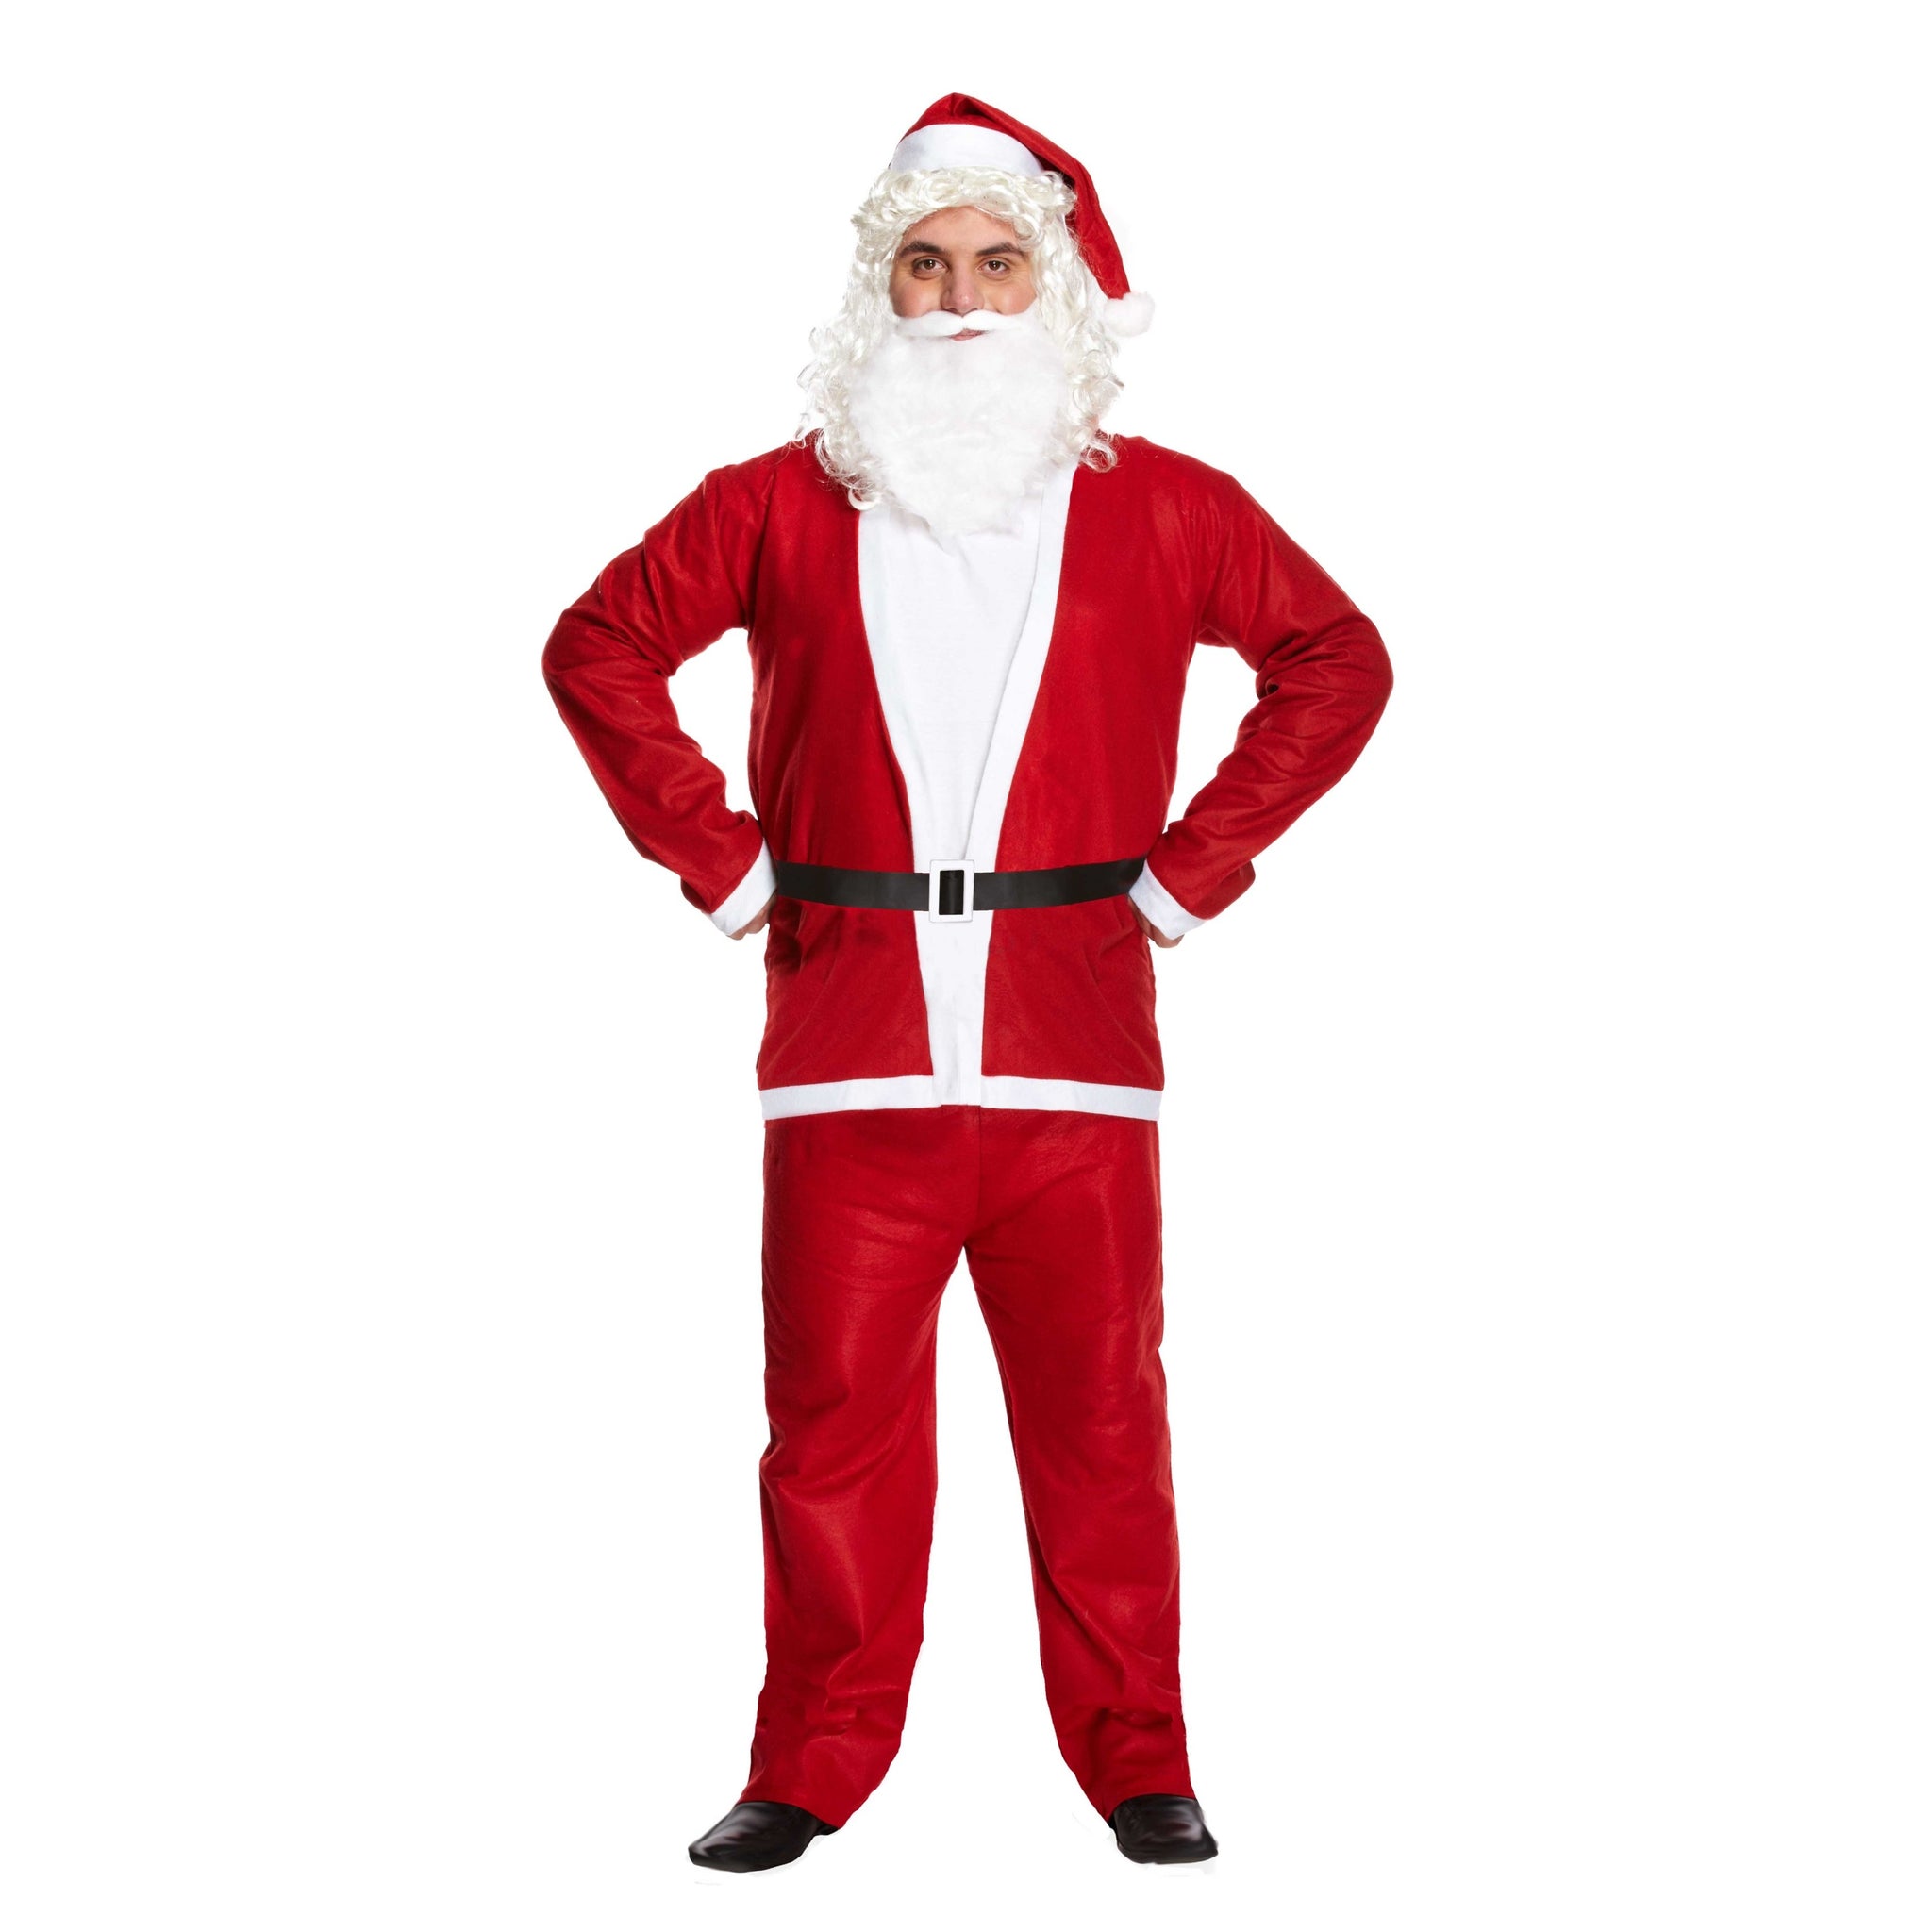 15 Funny Christmas Costume Ideas for 2022 - Fancydress.com